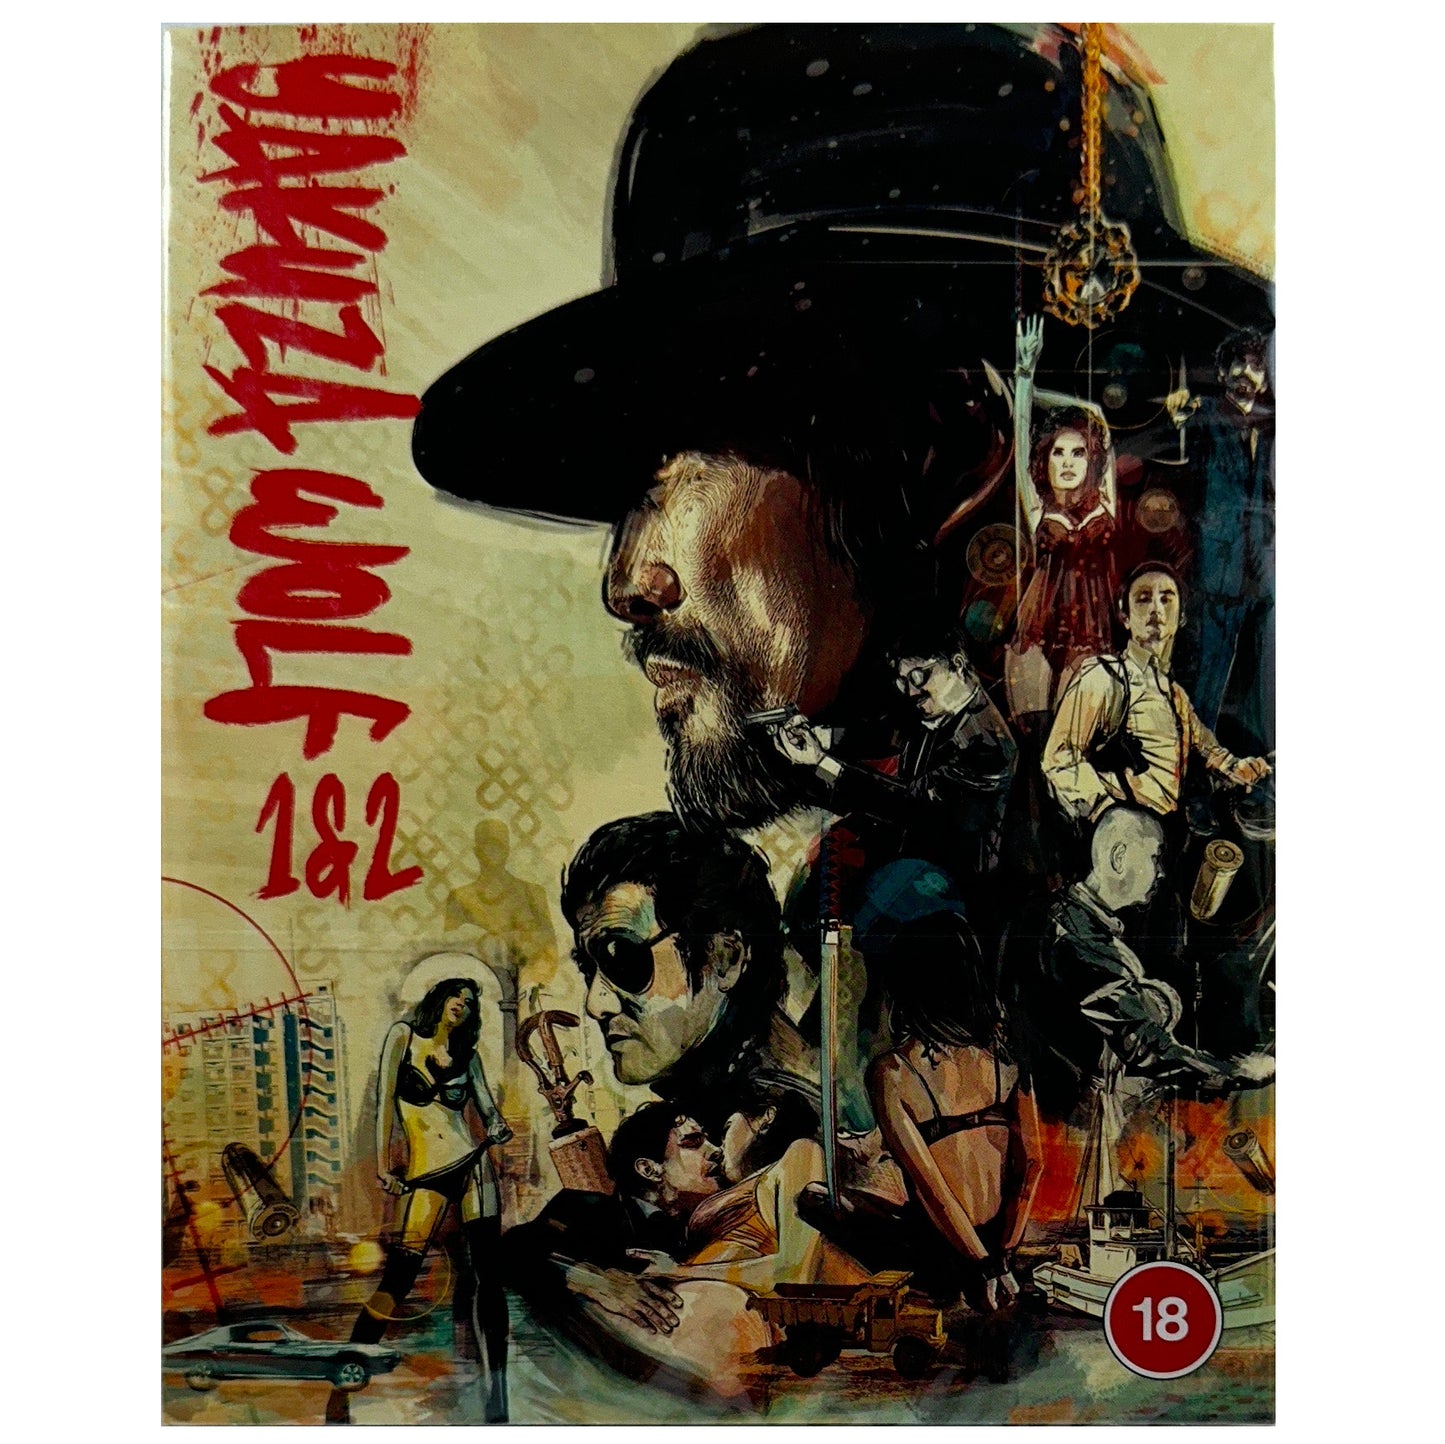 Yakuza Wolf 1 and 2 Blu-Ray - Limited Edition